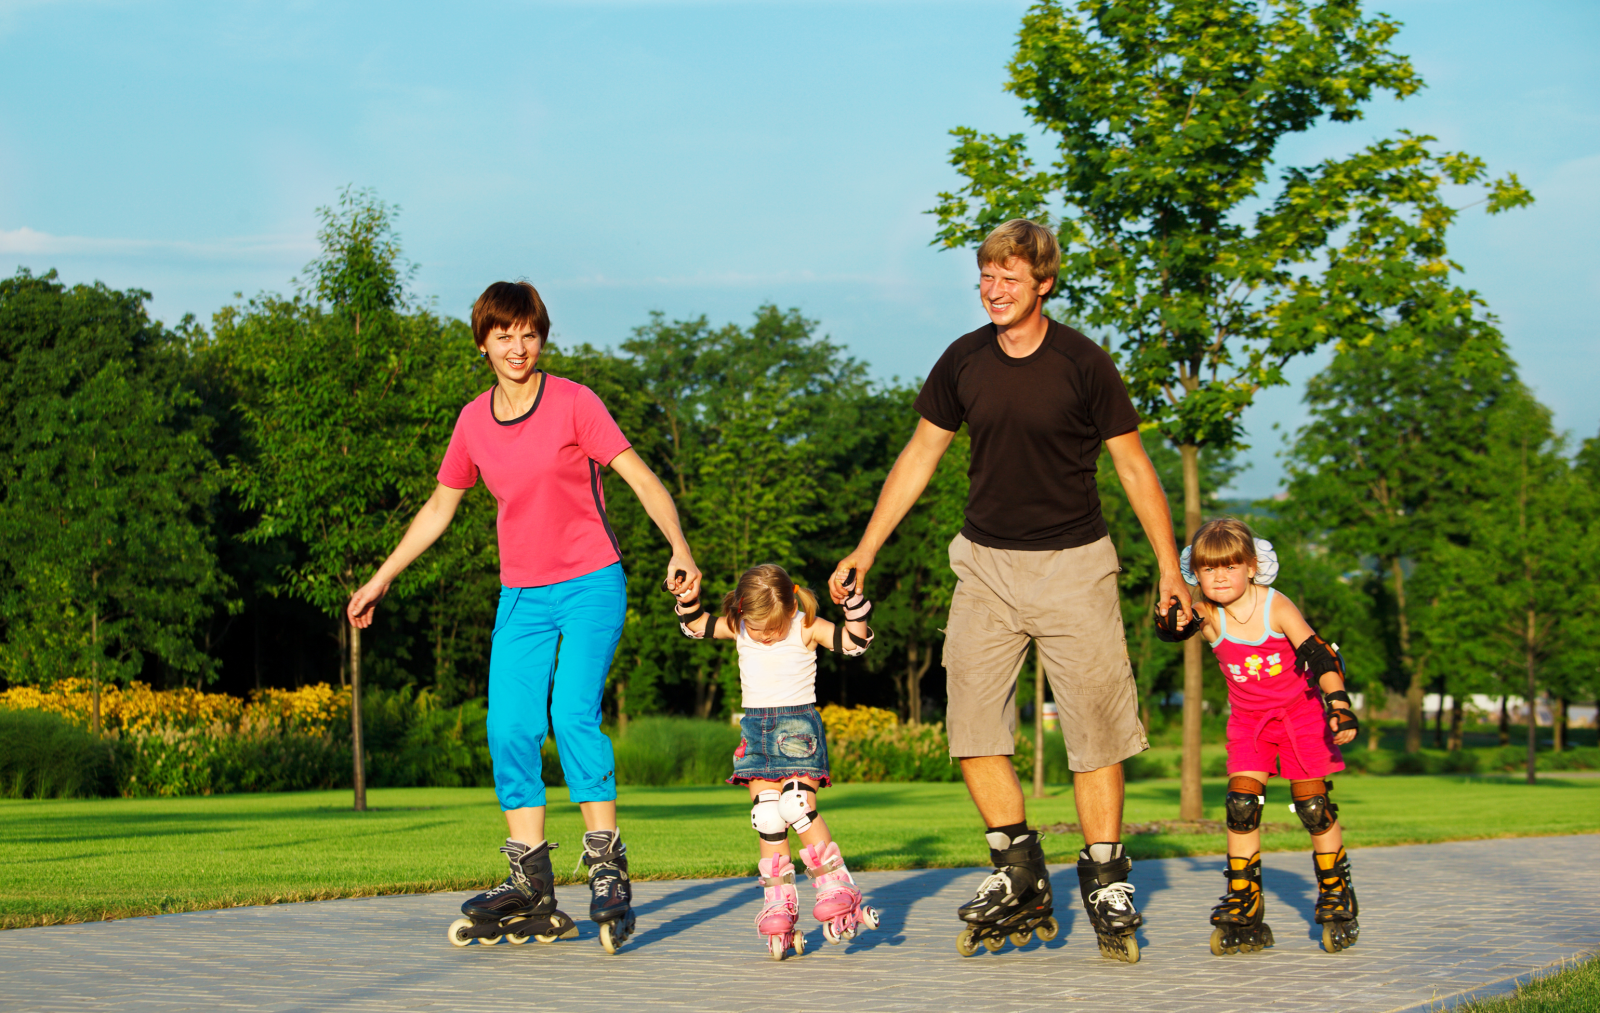 Ролики папа и мама. Семья занимается спортом. Семья на роликовых коньках. Катание на роликах. Дети спорт семья.